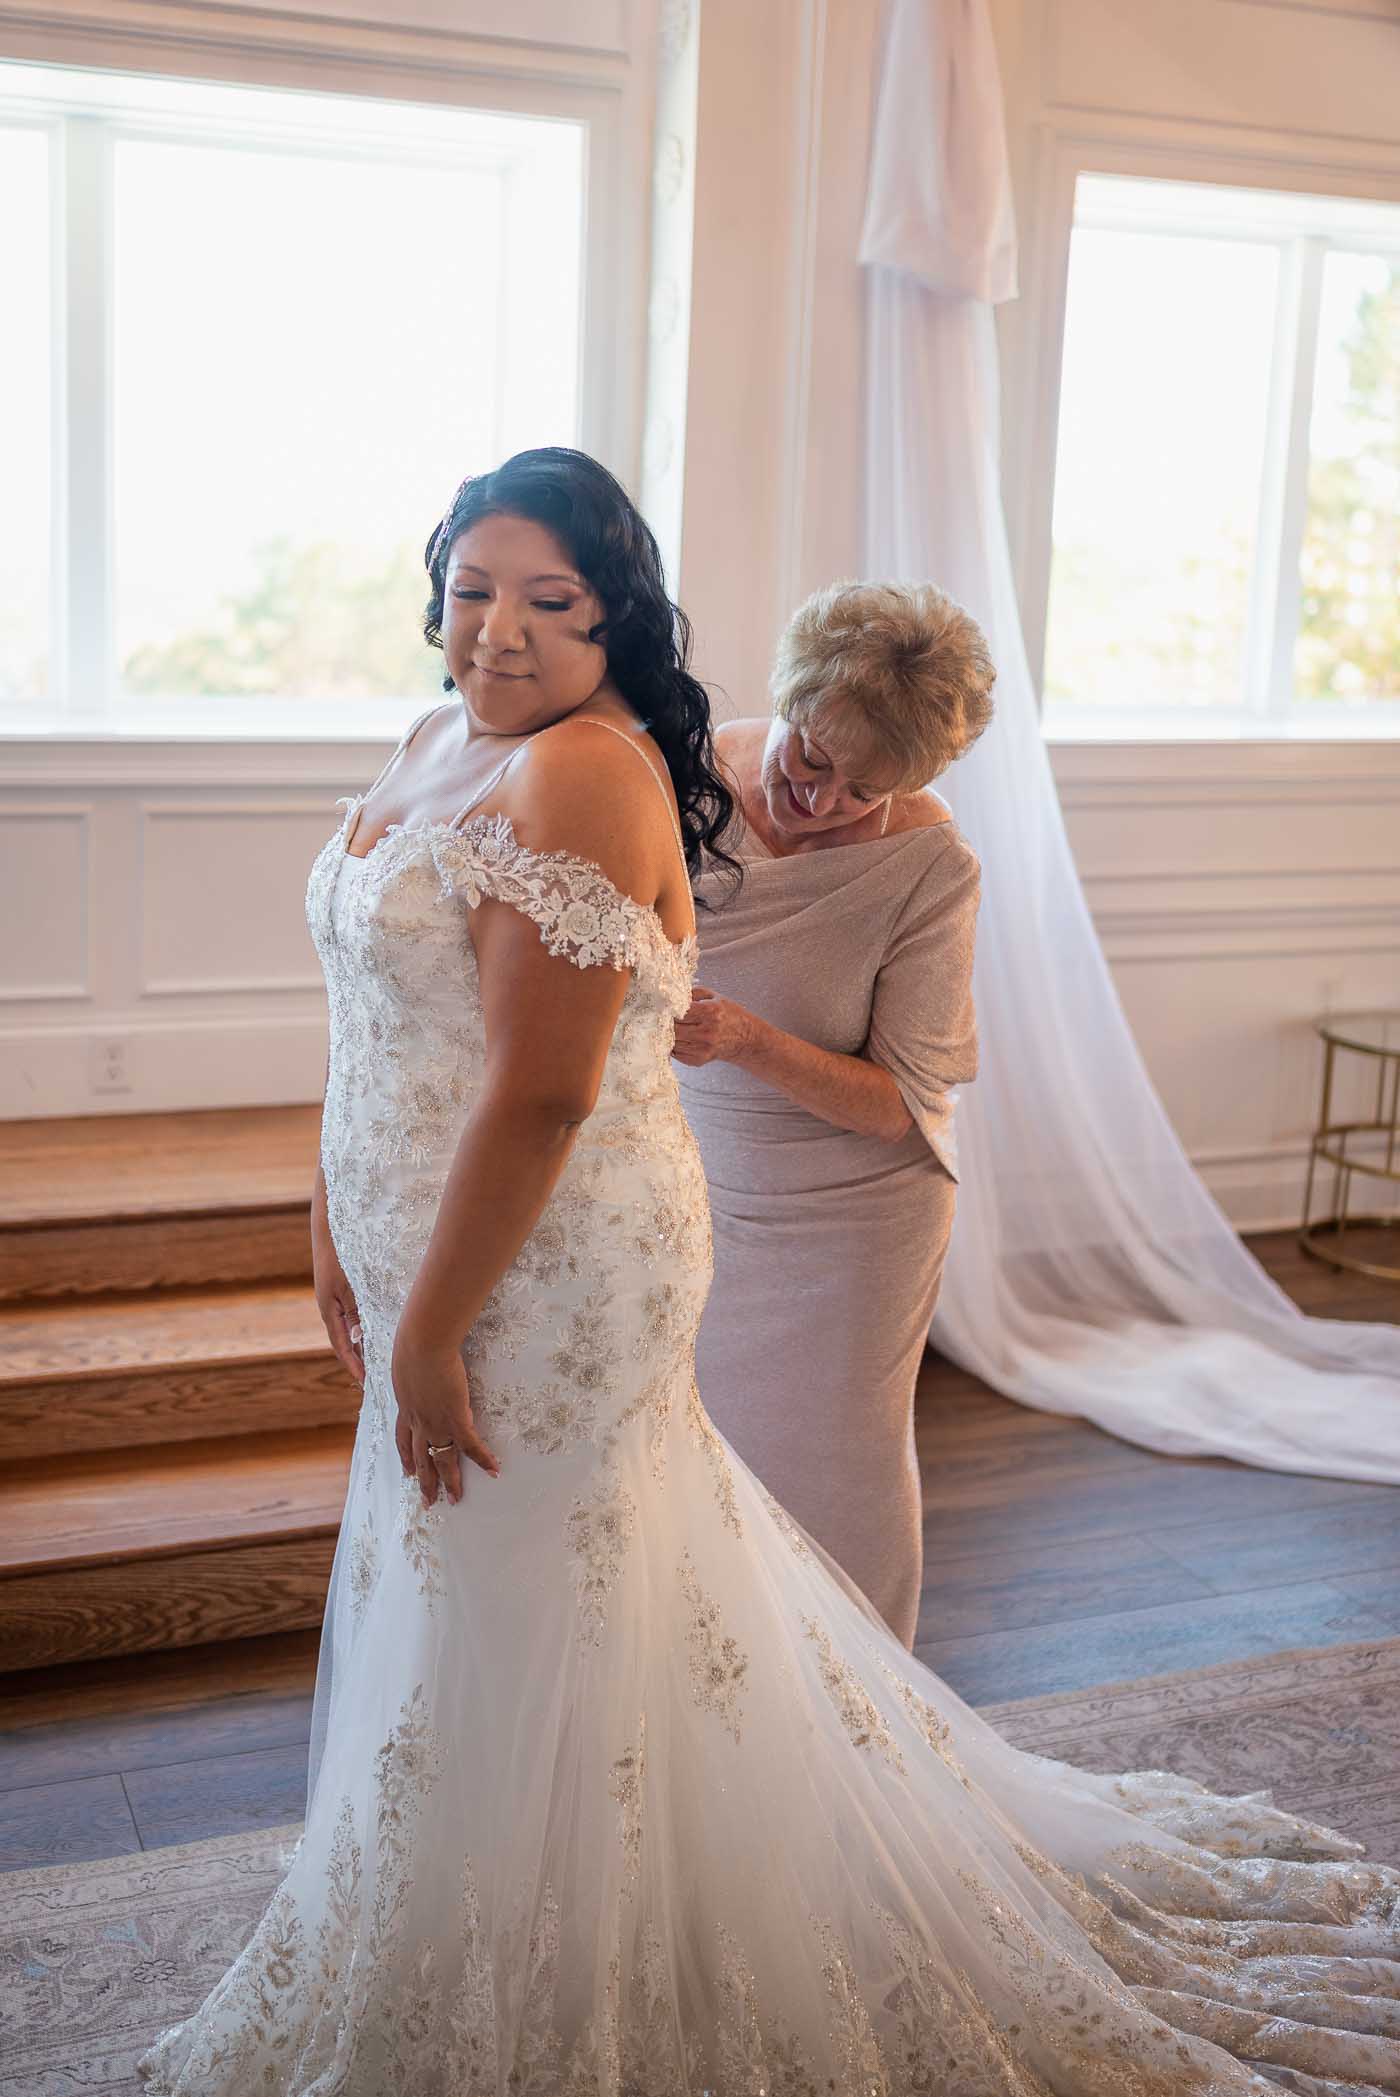 mom helping bride zip up her dress